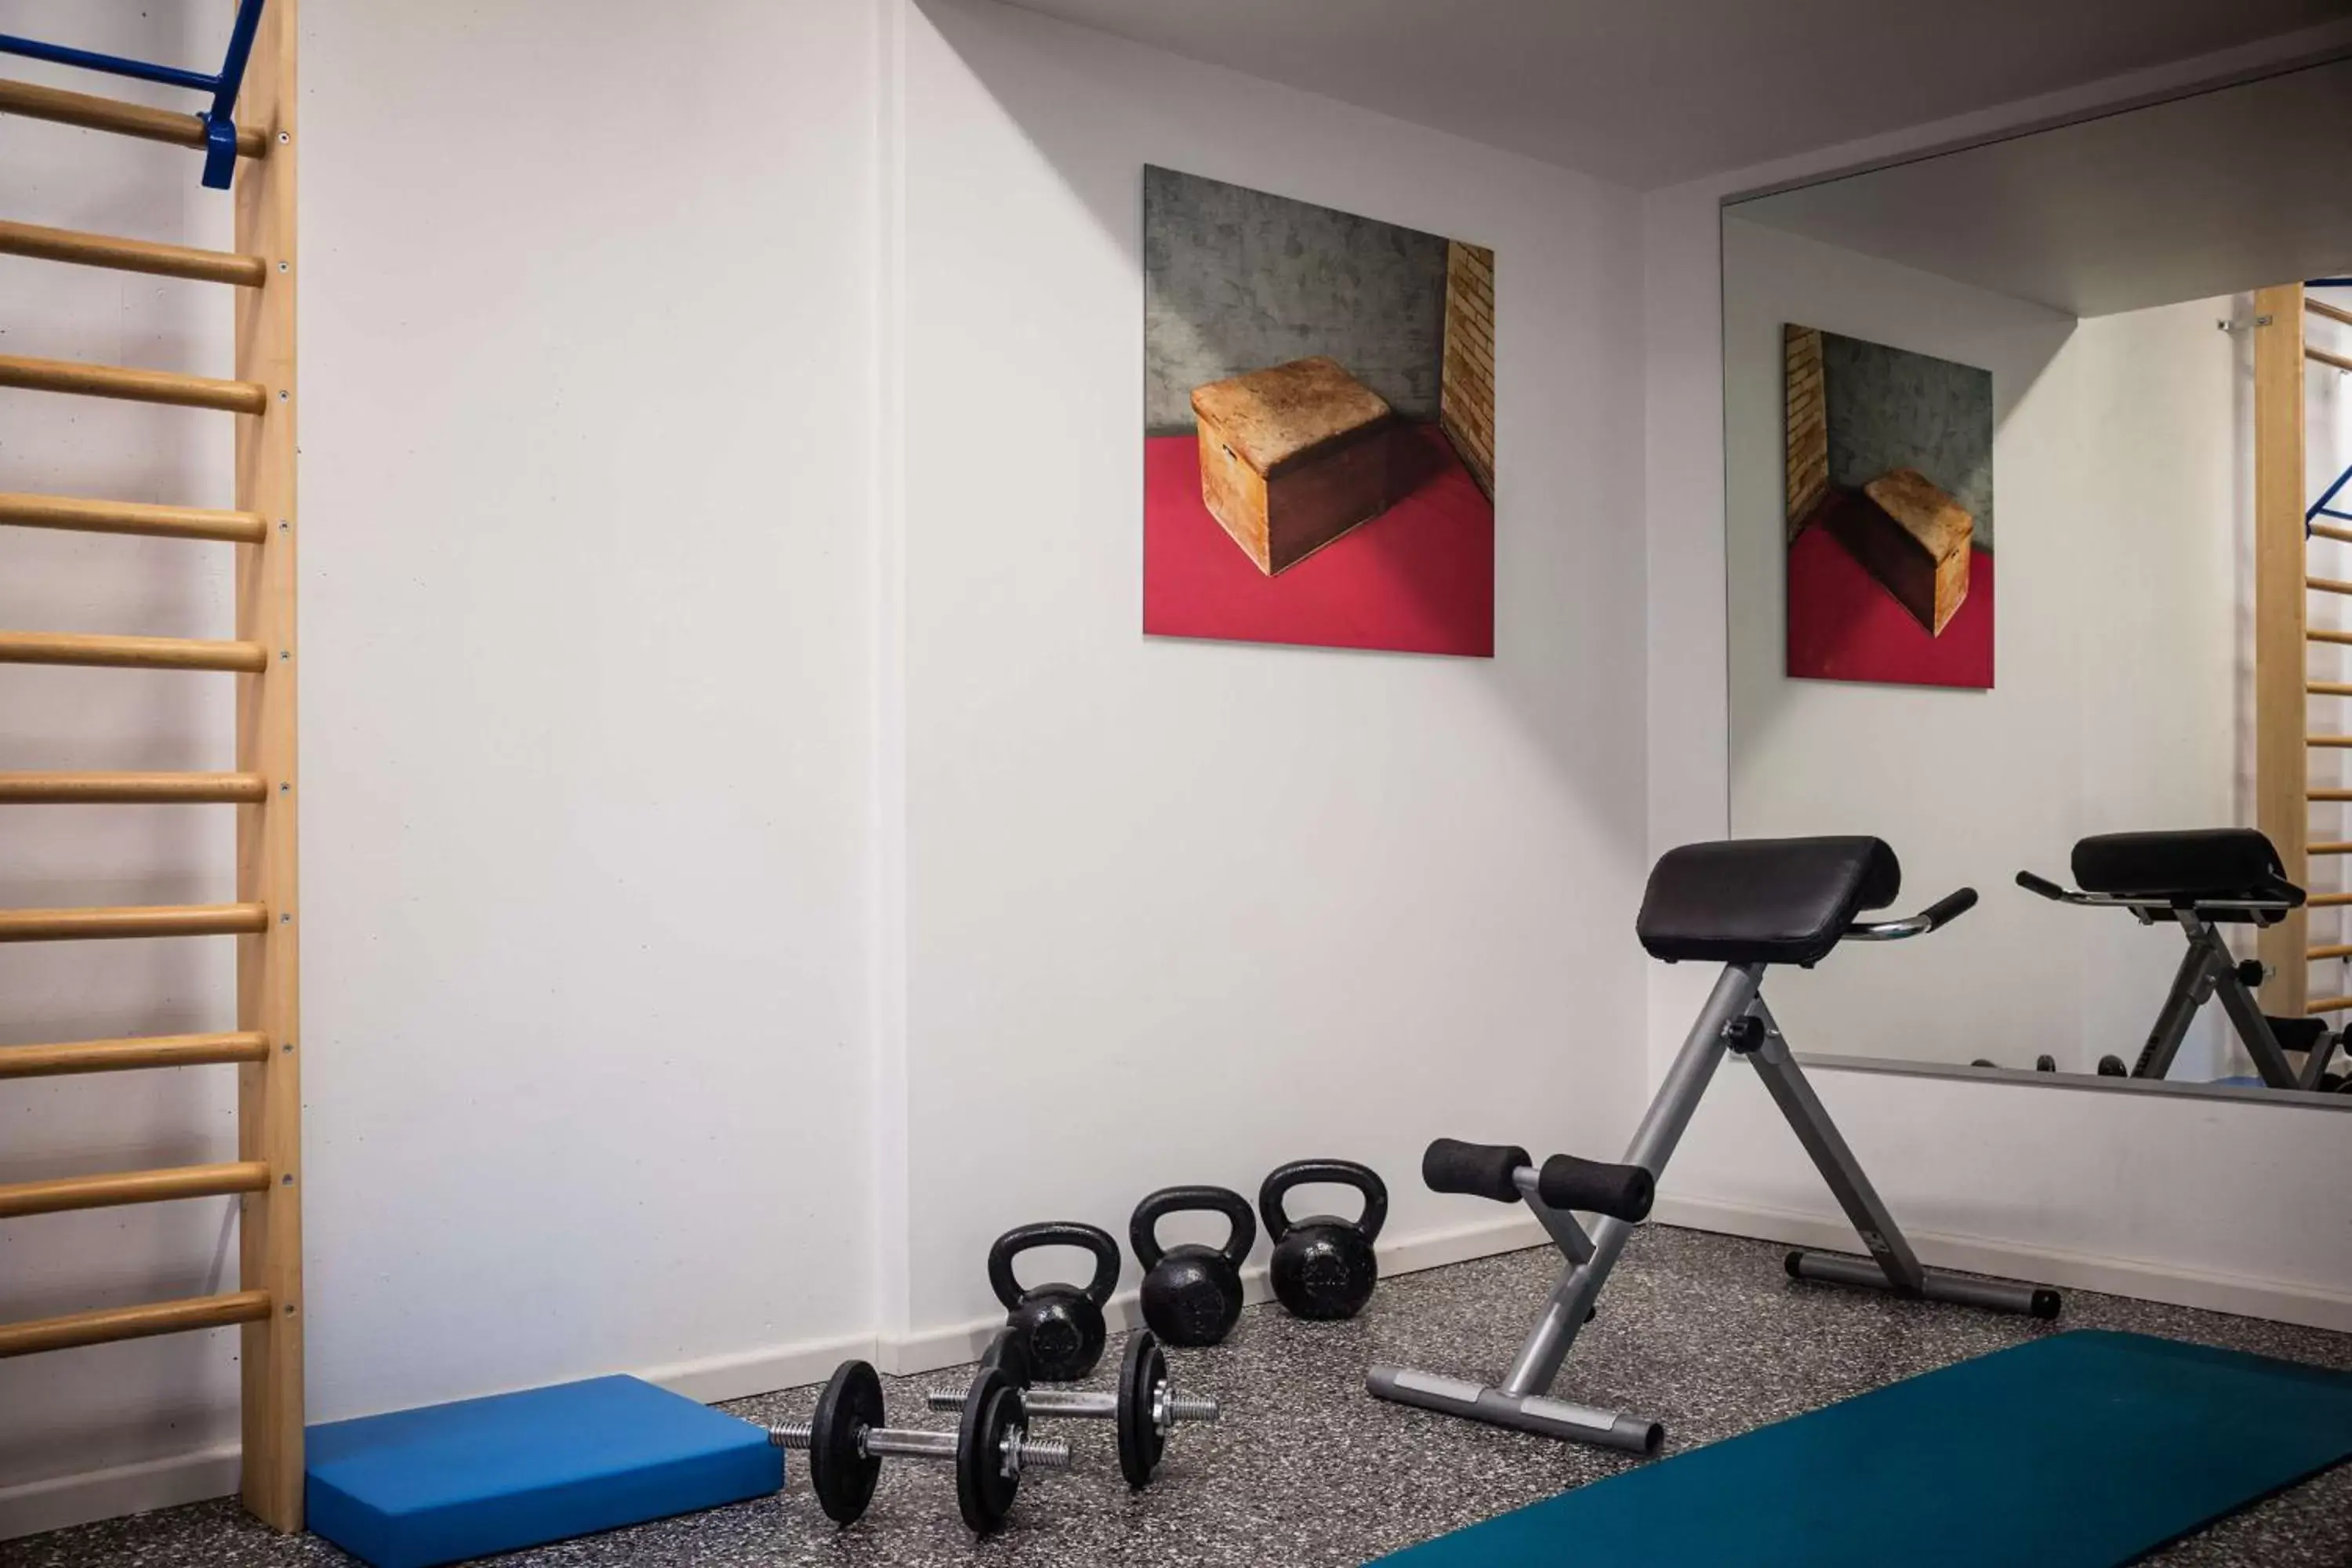 Fitness centre/facilities, Fitness Center/Facilities in Lindner Hotel Frankfurt Sportpark part of JdV by Hyatt